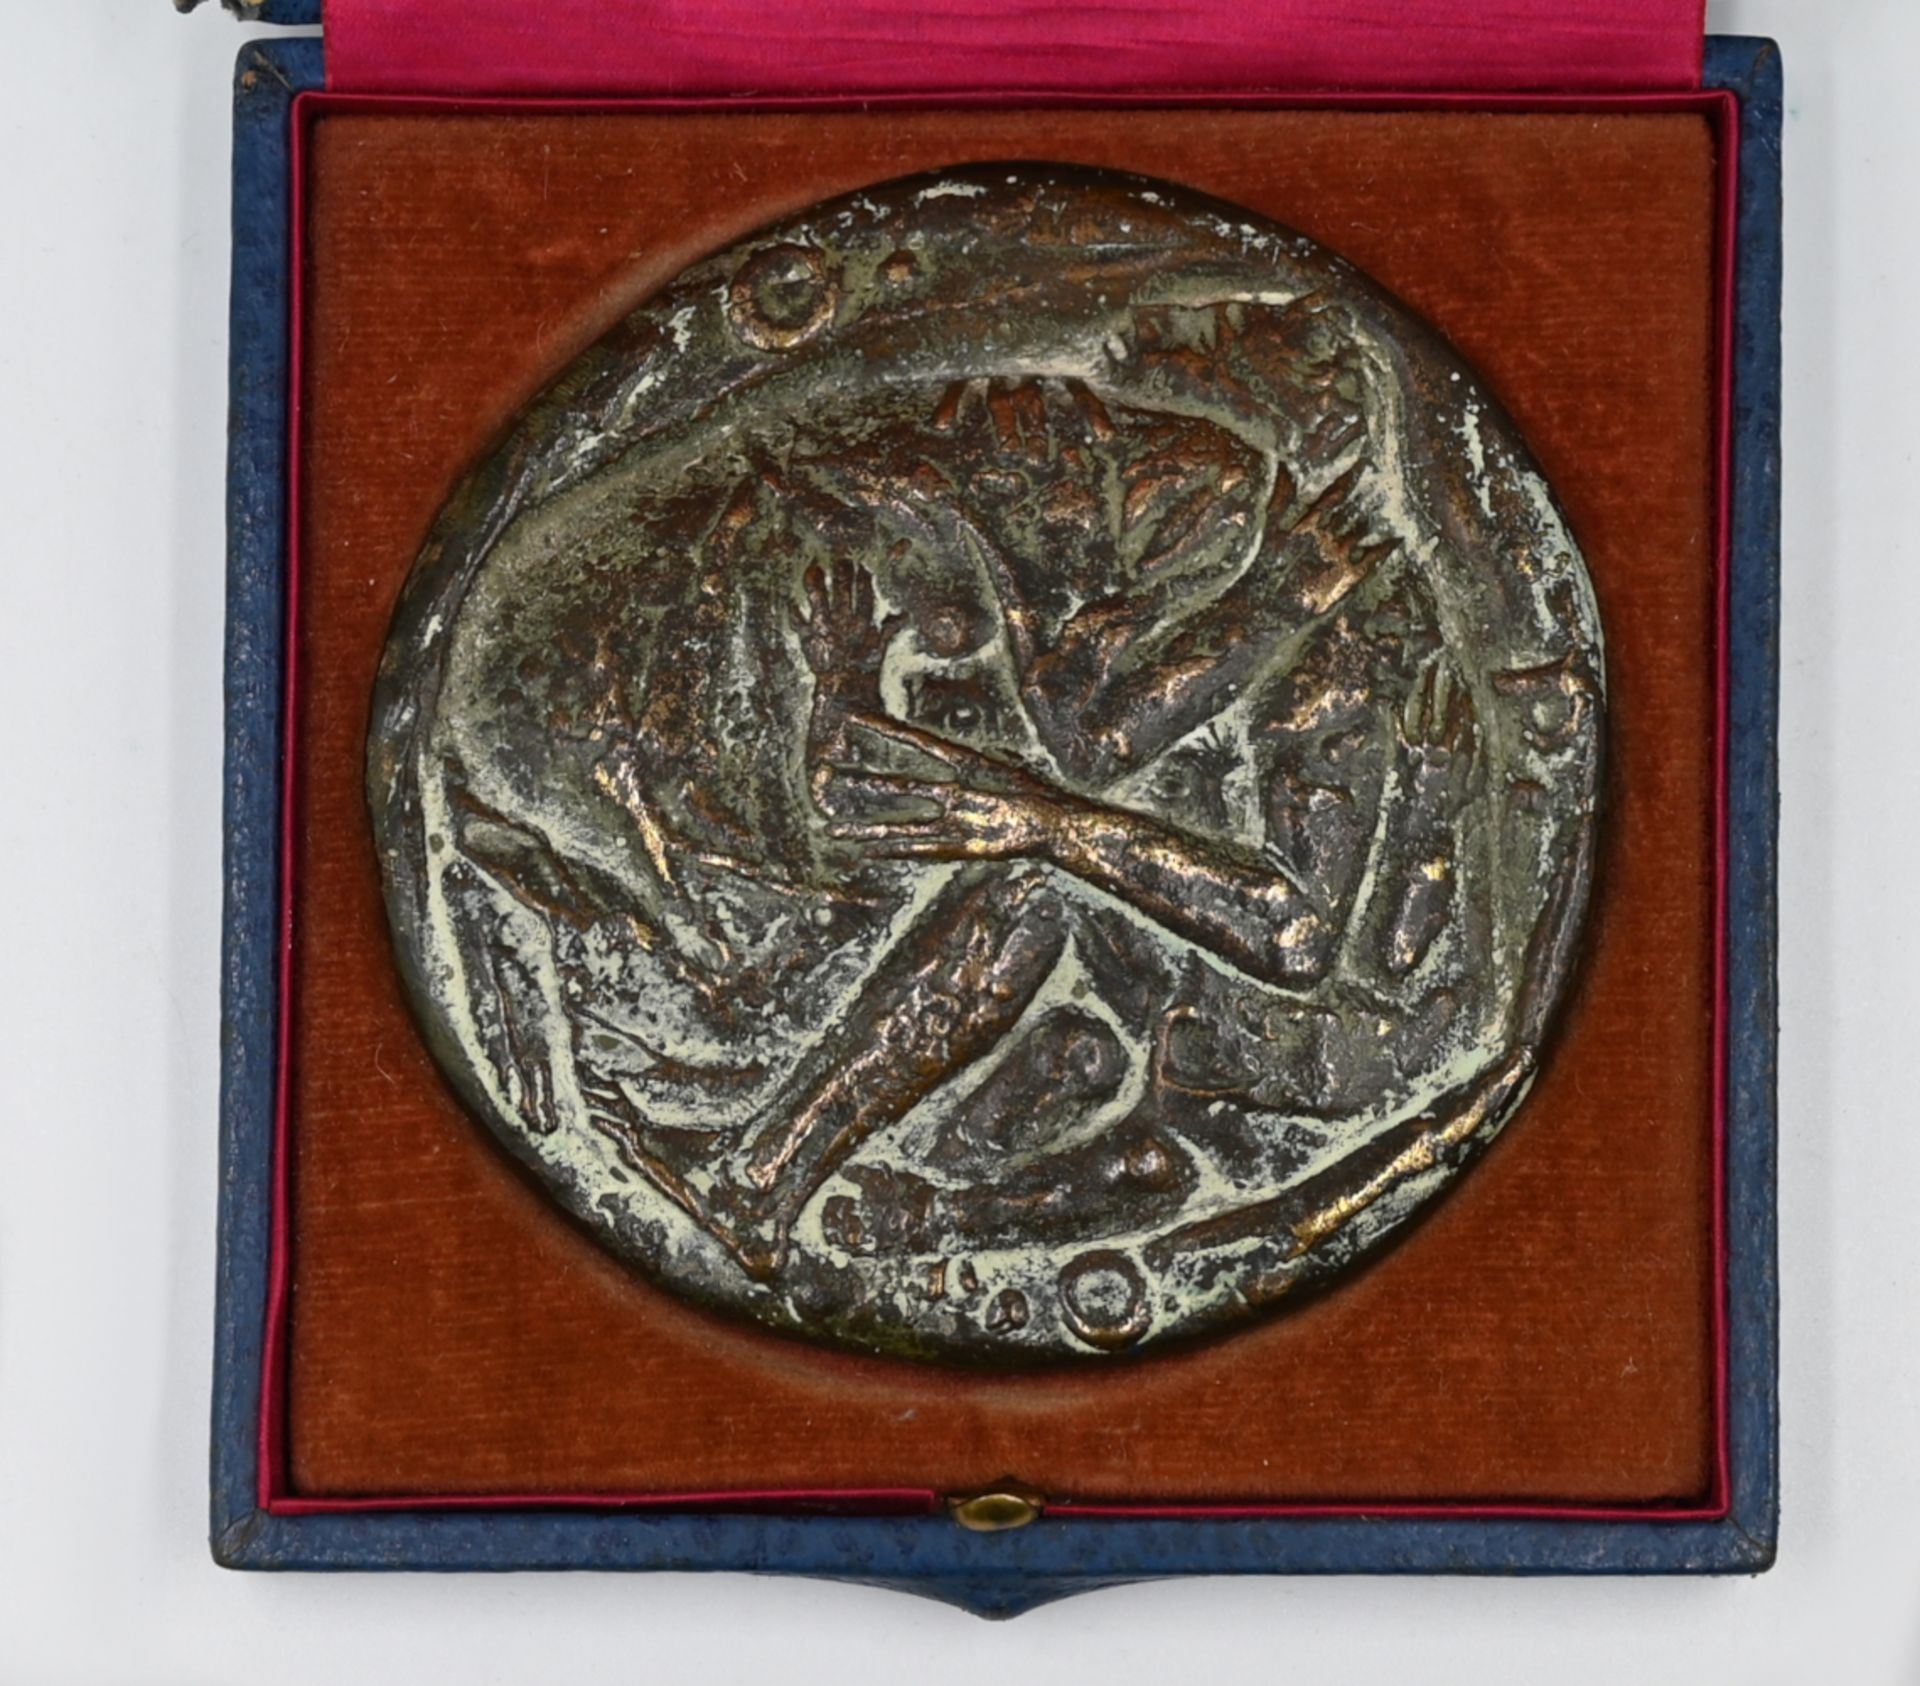 1 Münzplakette, wohl Bronze, vorderseitig mehrere umarmende Personen, mit Buchstaben O.P.O., rücks.